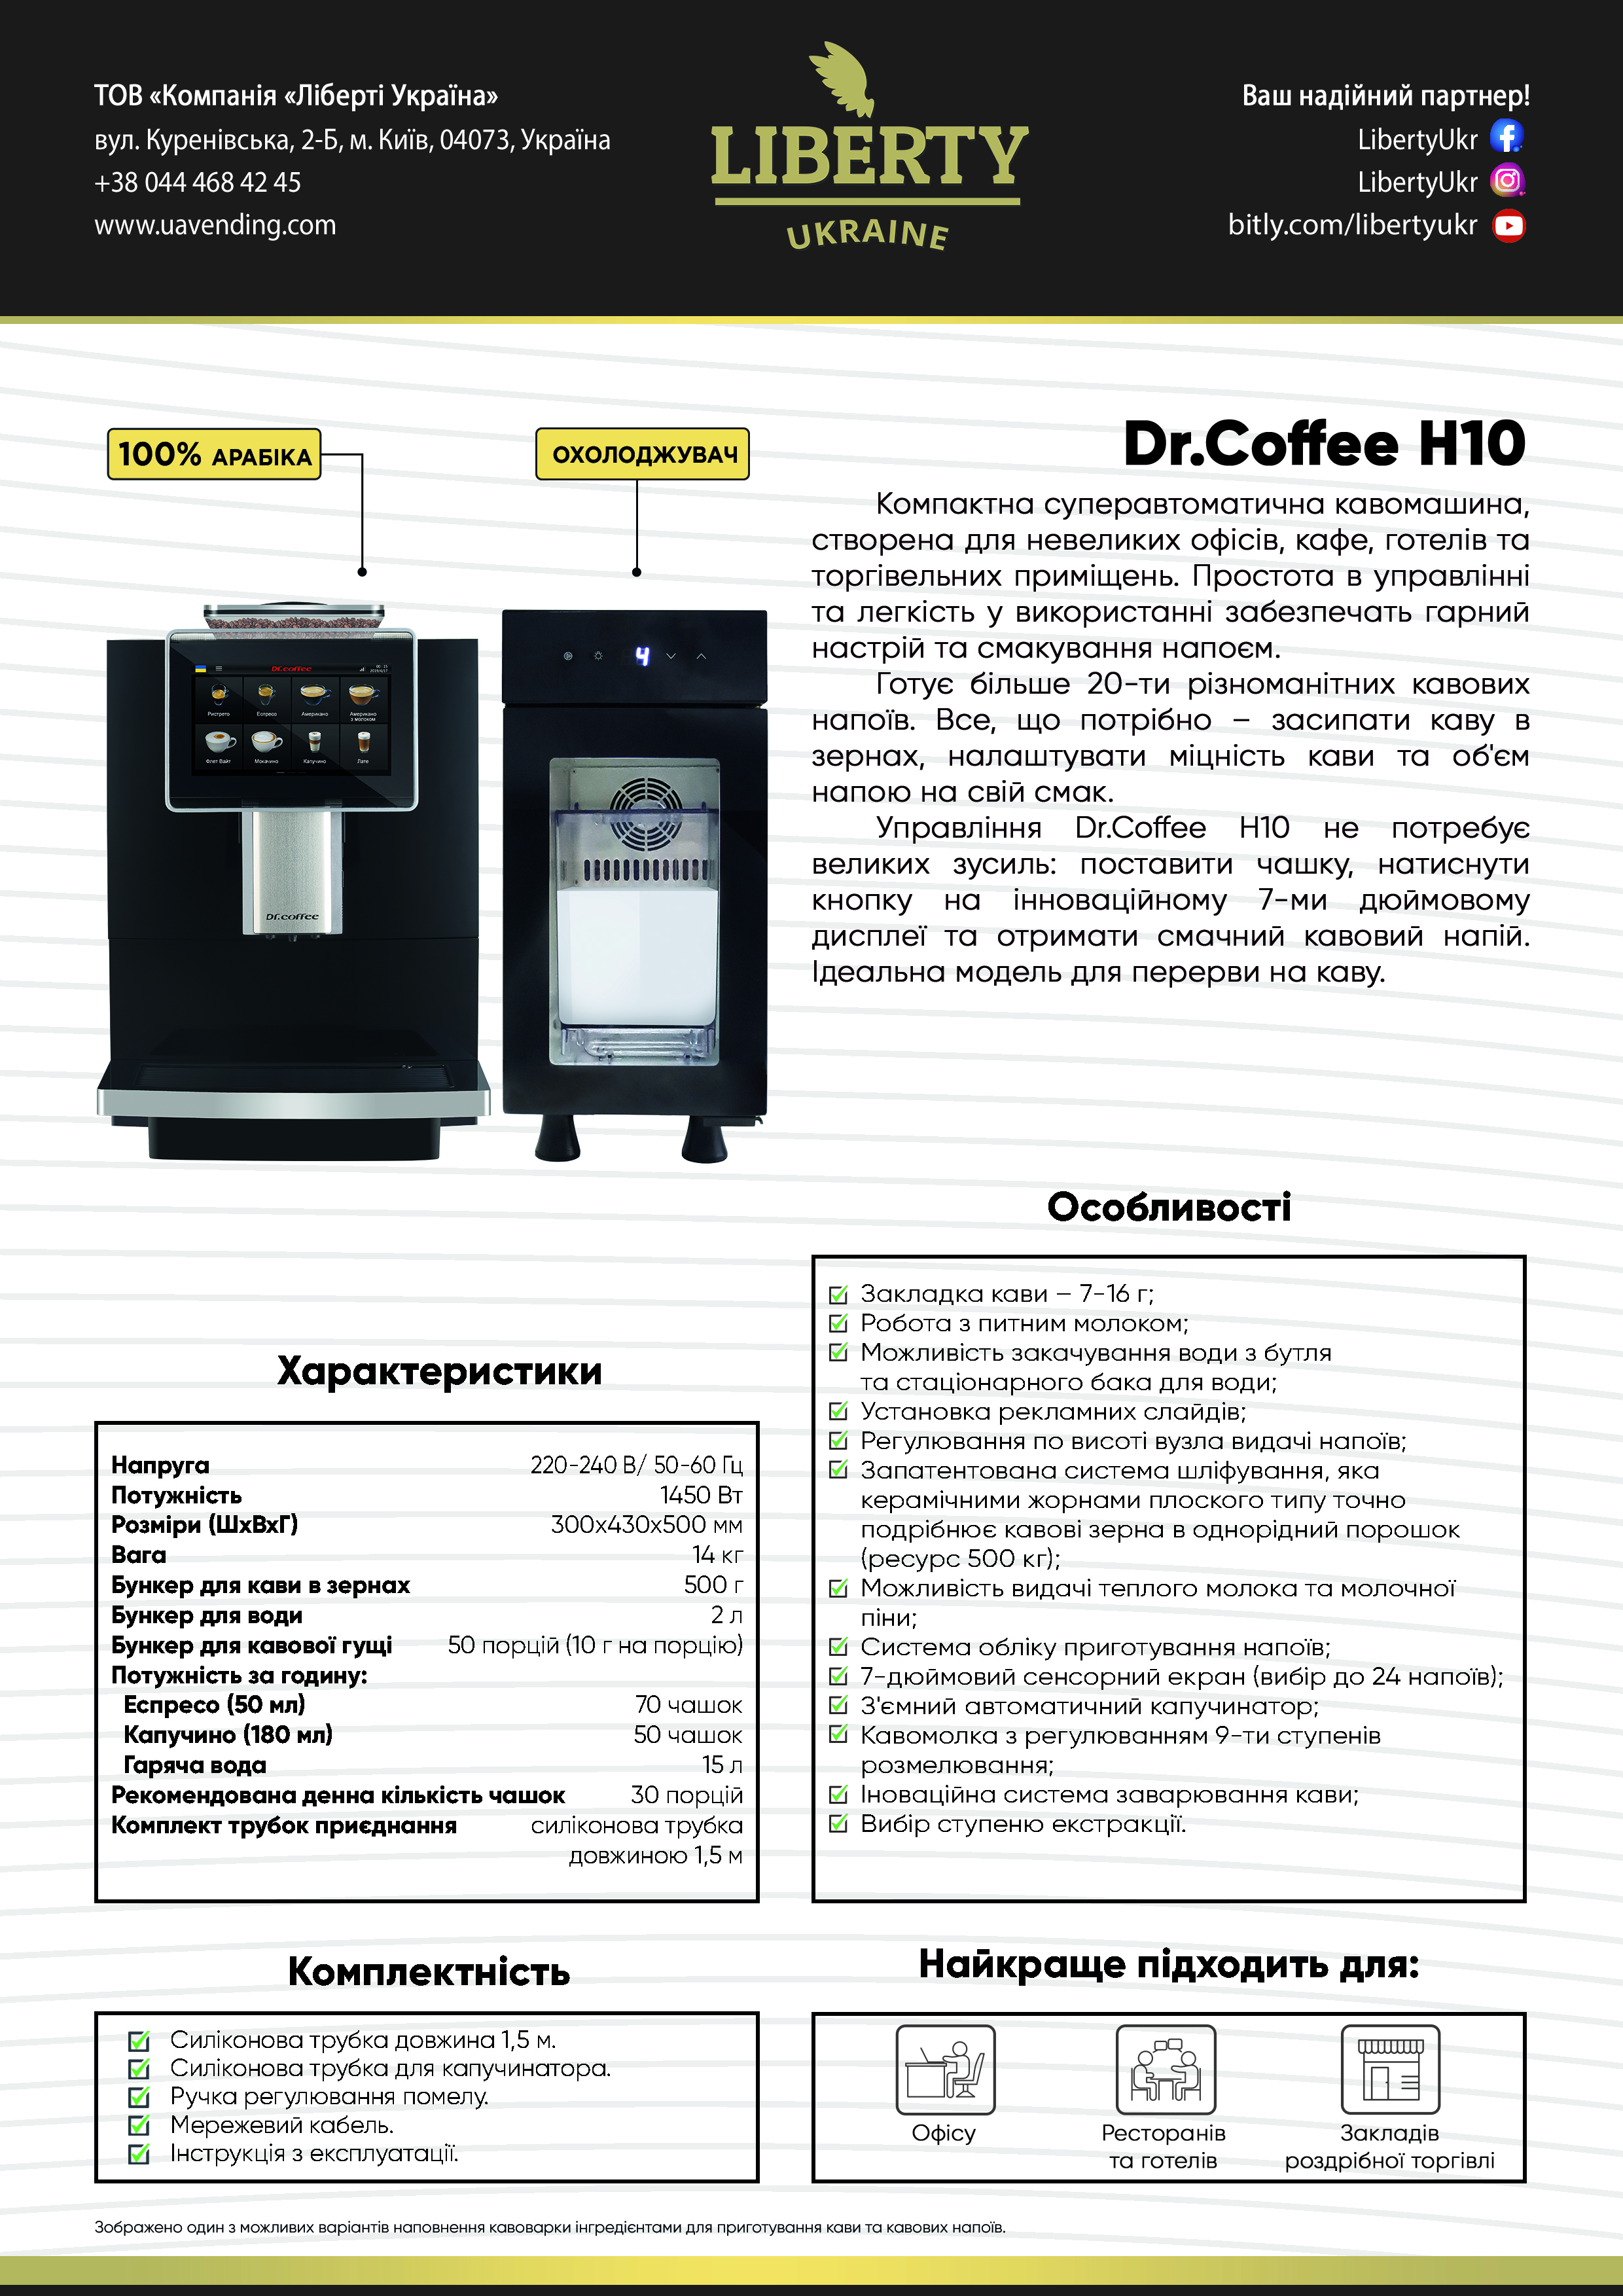 Dr. Café_H10